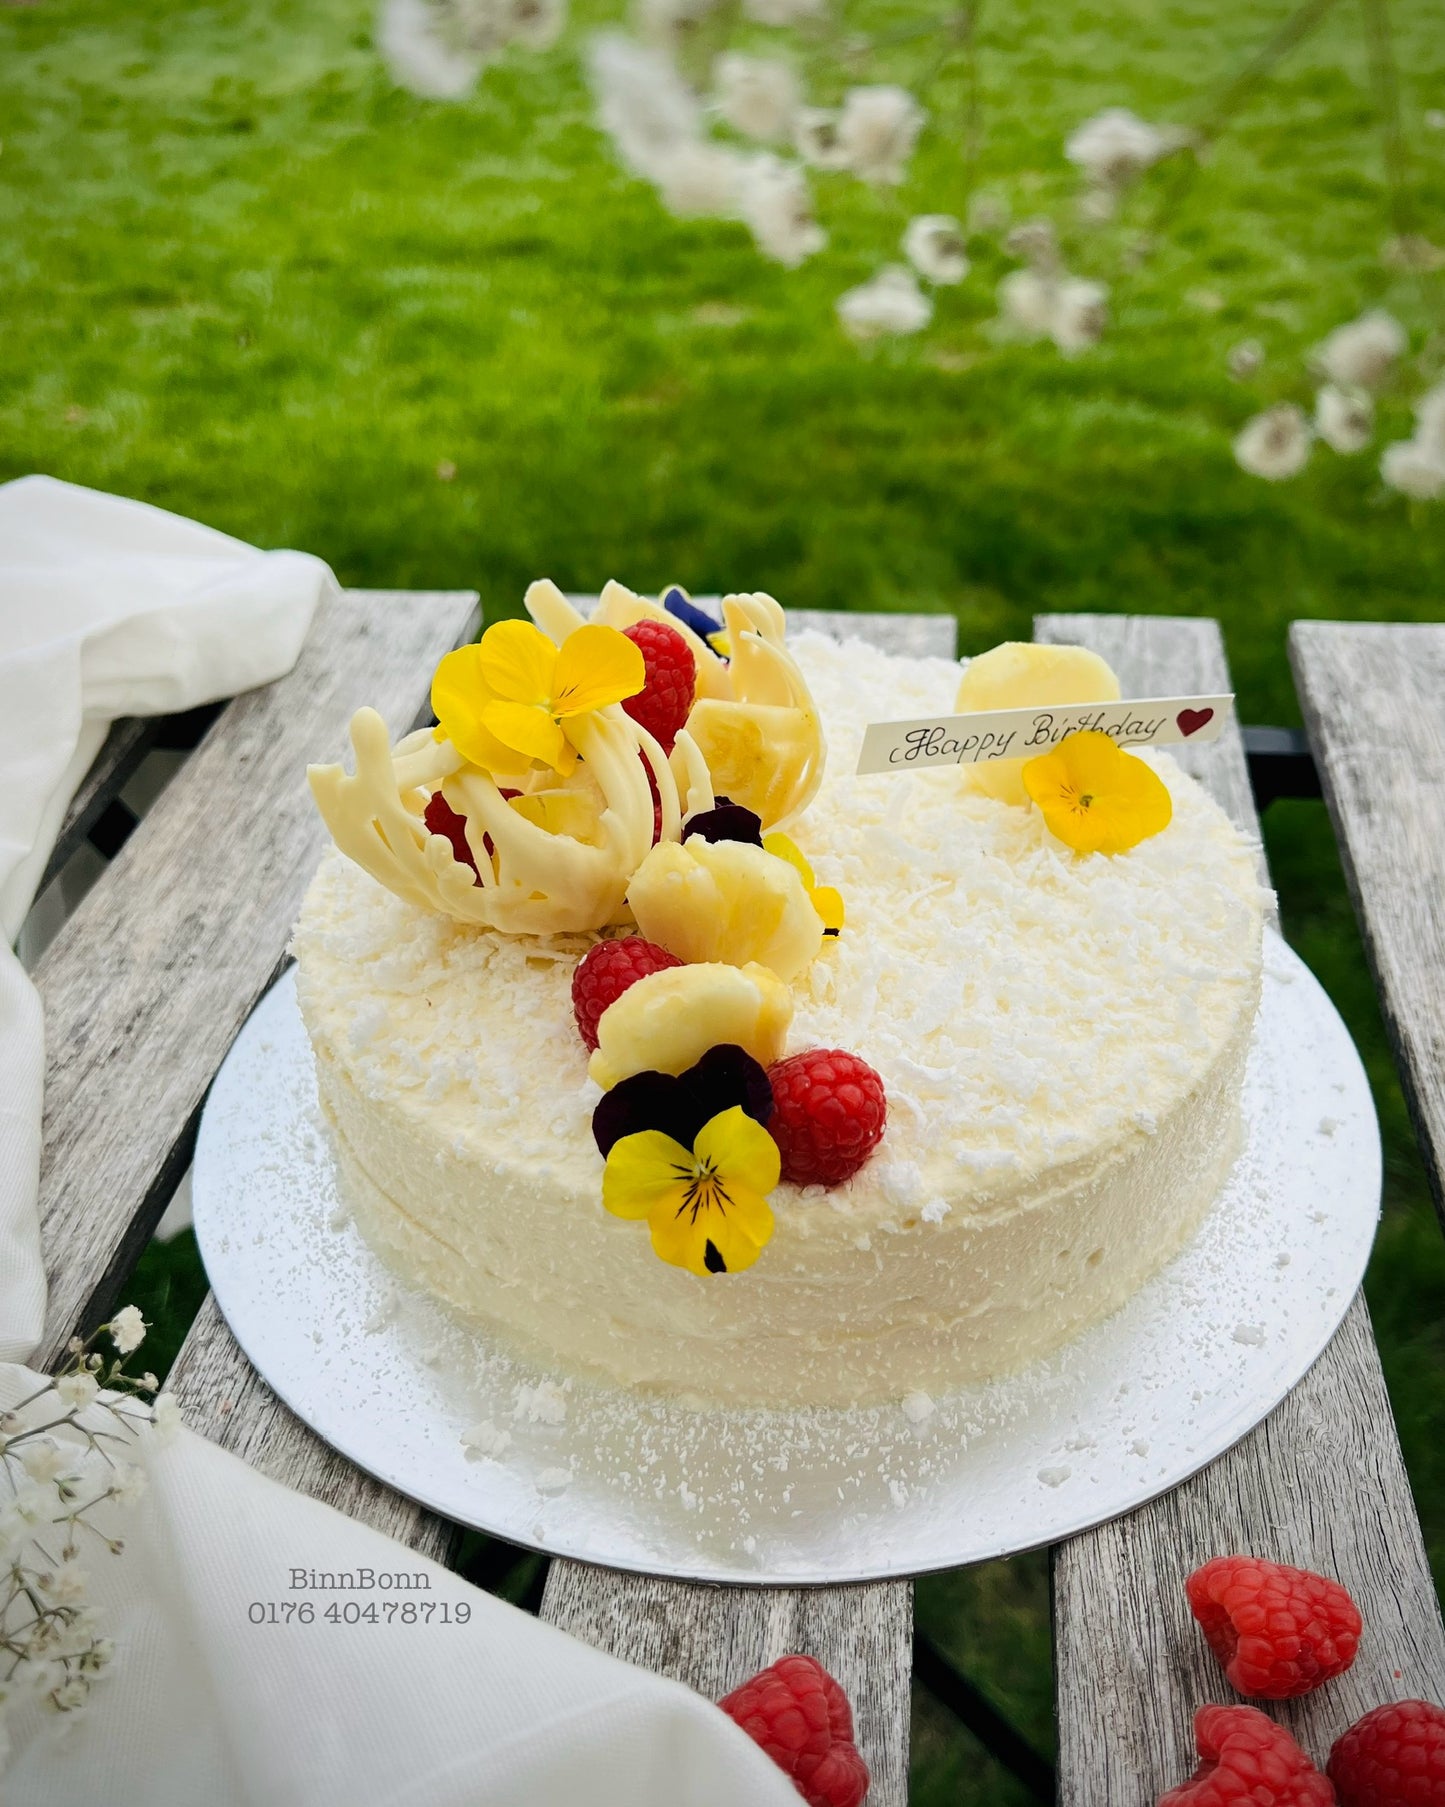 60. Torte "Tropical inspiration" Crêpes-Torte mit frischem Kokosfleisch und Ananas 22 cm